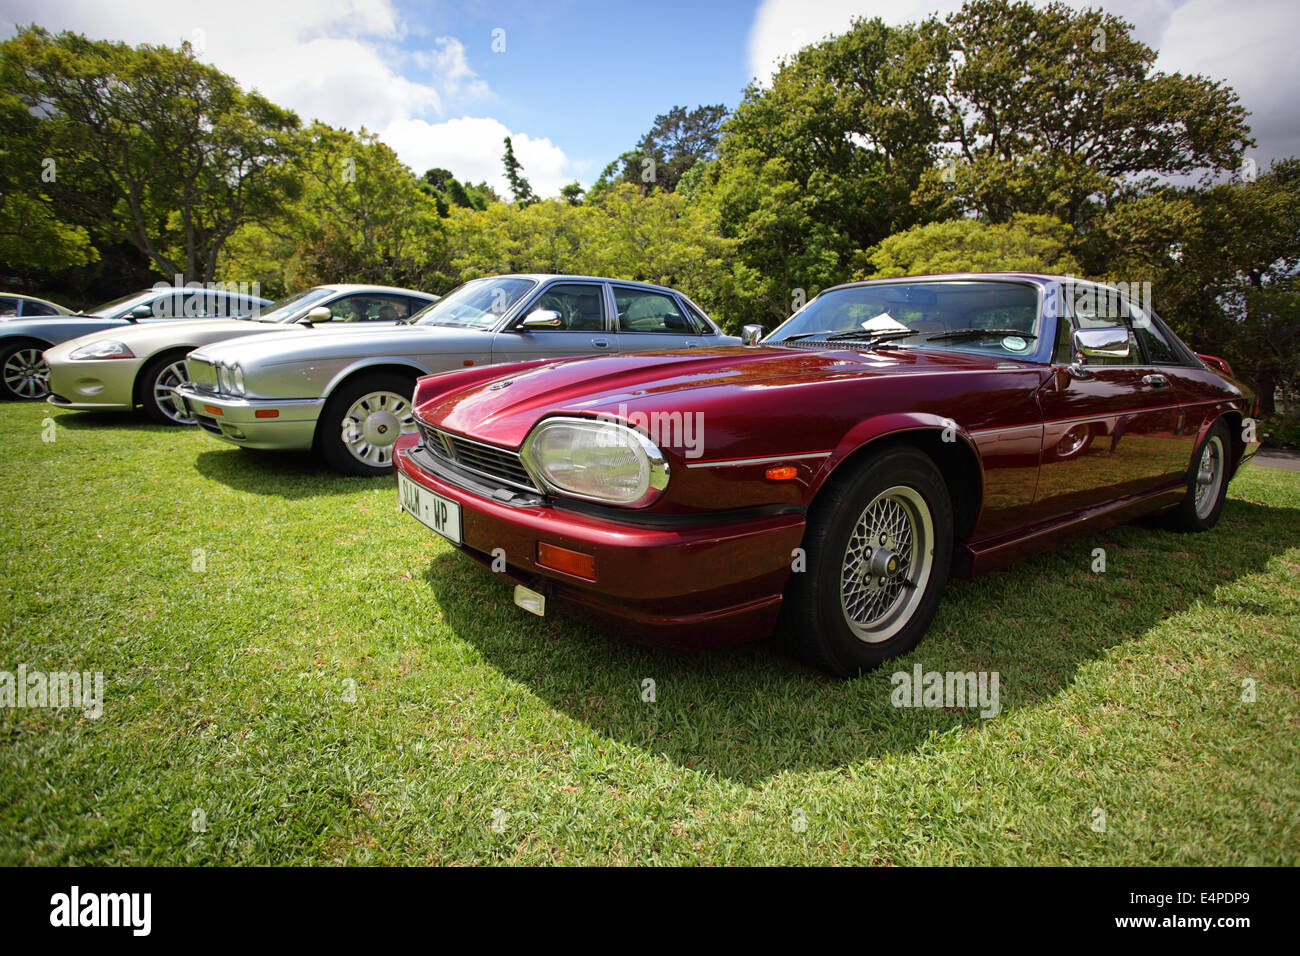 Vintage Jaguar, Shiny red Jaguar XJ-S grand tourer Stock Photo